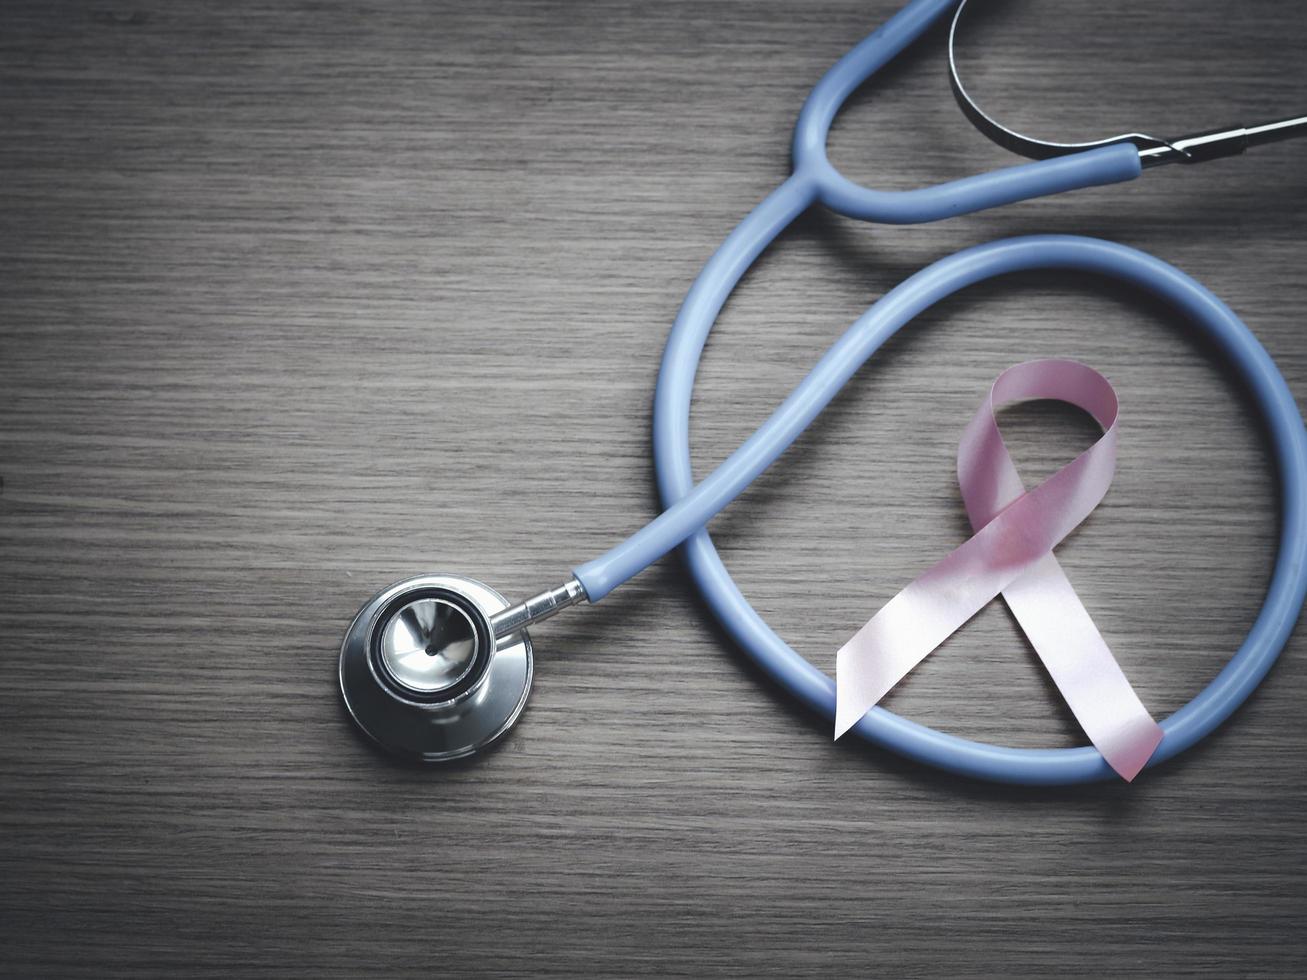 Brustkrebs-Bewusstseinsrosaband mit Doktorstethoskop auf hölzernem Hintergrund, Oktobersymbol, Gesundheits- und Medizinkonzept foto